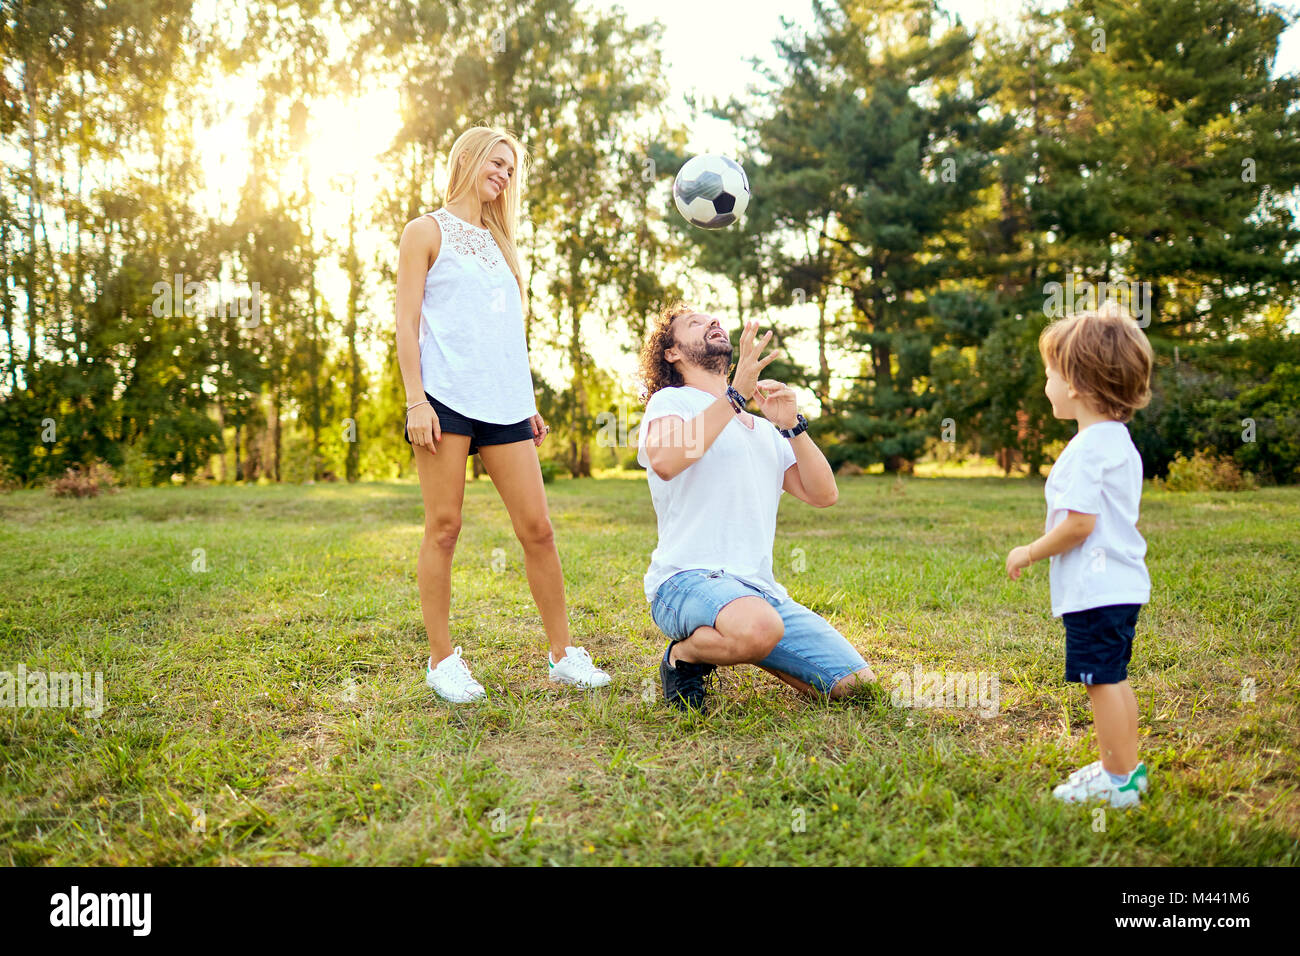 Familia jugando con la pelota en el parque. Foto de stock